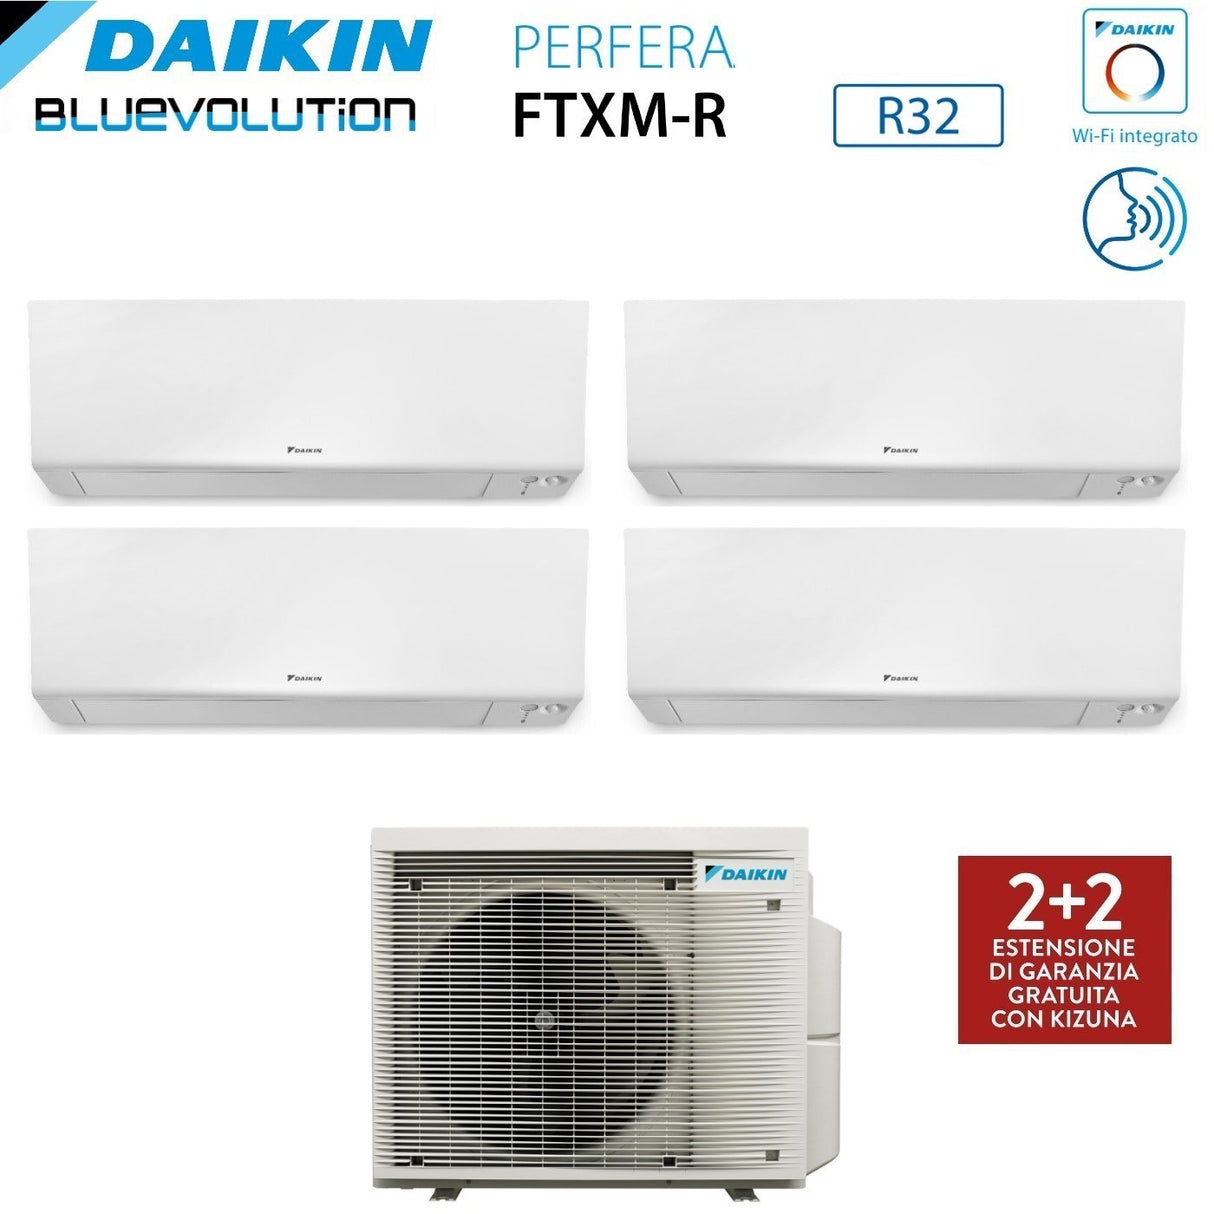 immagine-2-daikin-climatizzatore-condizionatore-daikin-bluevolution-quadri-split-inverter-serie-ftxmr-perfera-wall-7999-con-4mxm68a-r-32-wi-fi-integrato-7000900090009000-garanzia-italiana